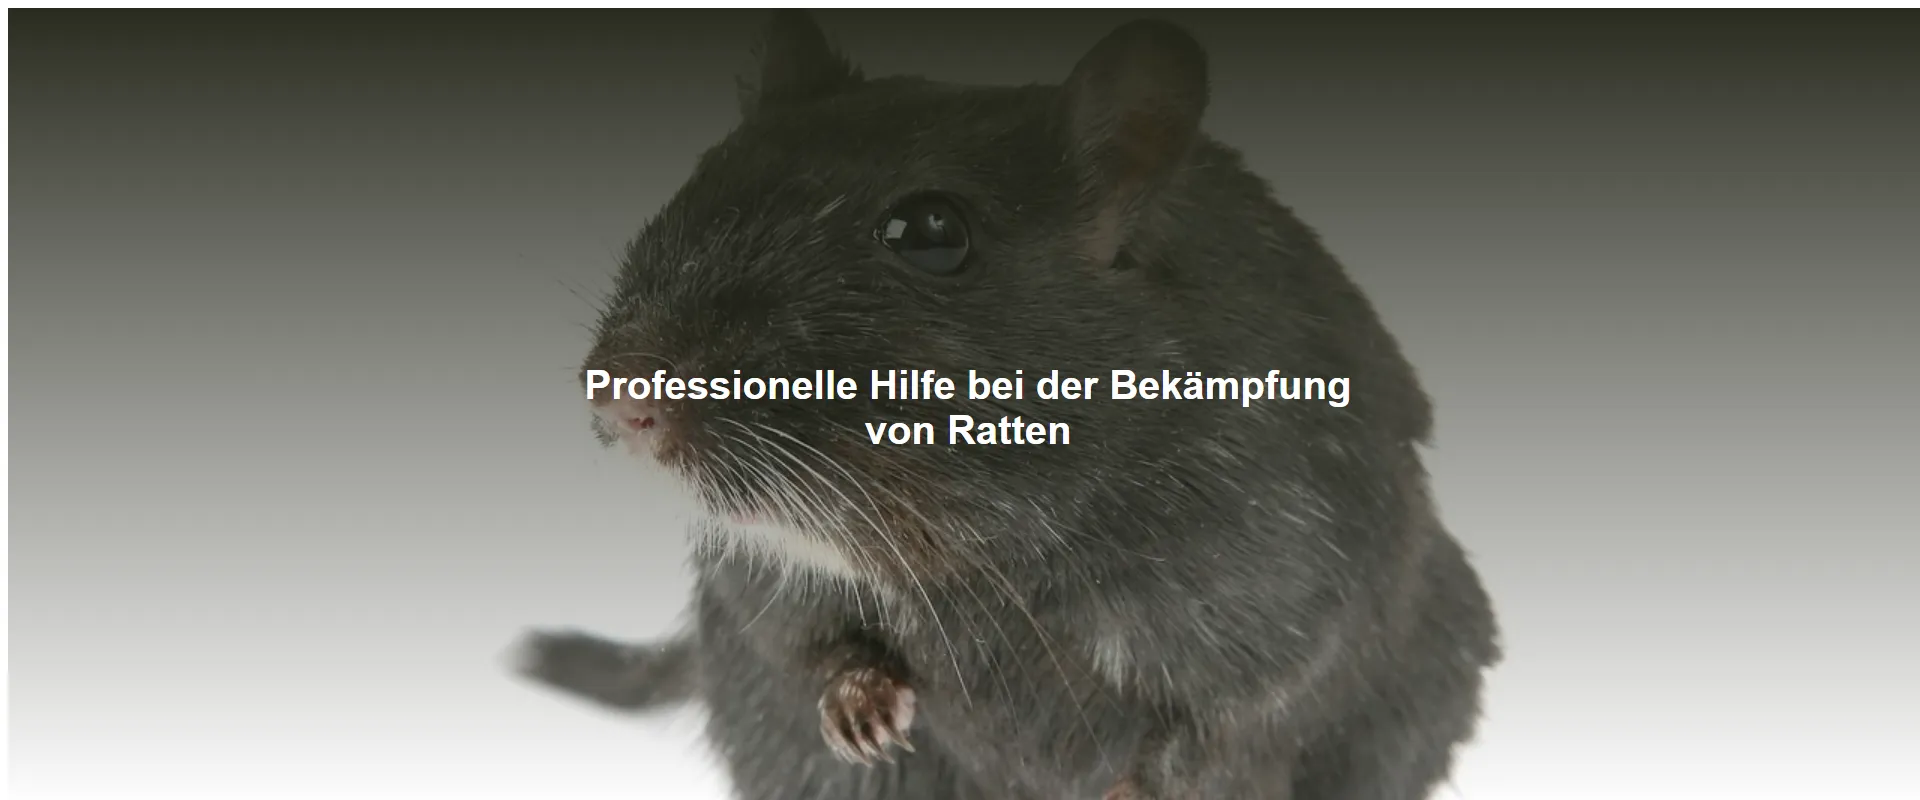 Professionelle Hilfe bei der Bekämpfung von Ratten